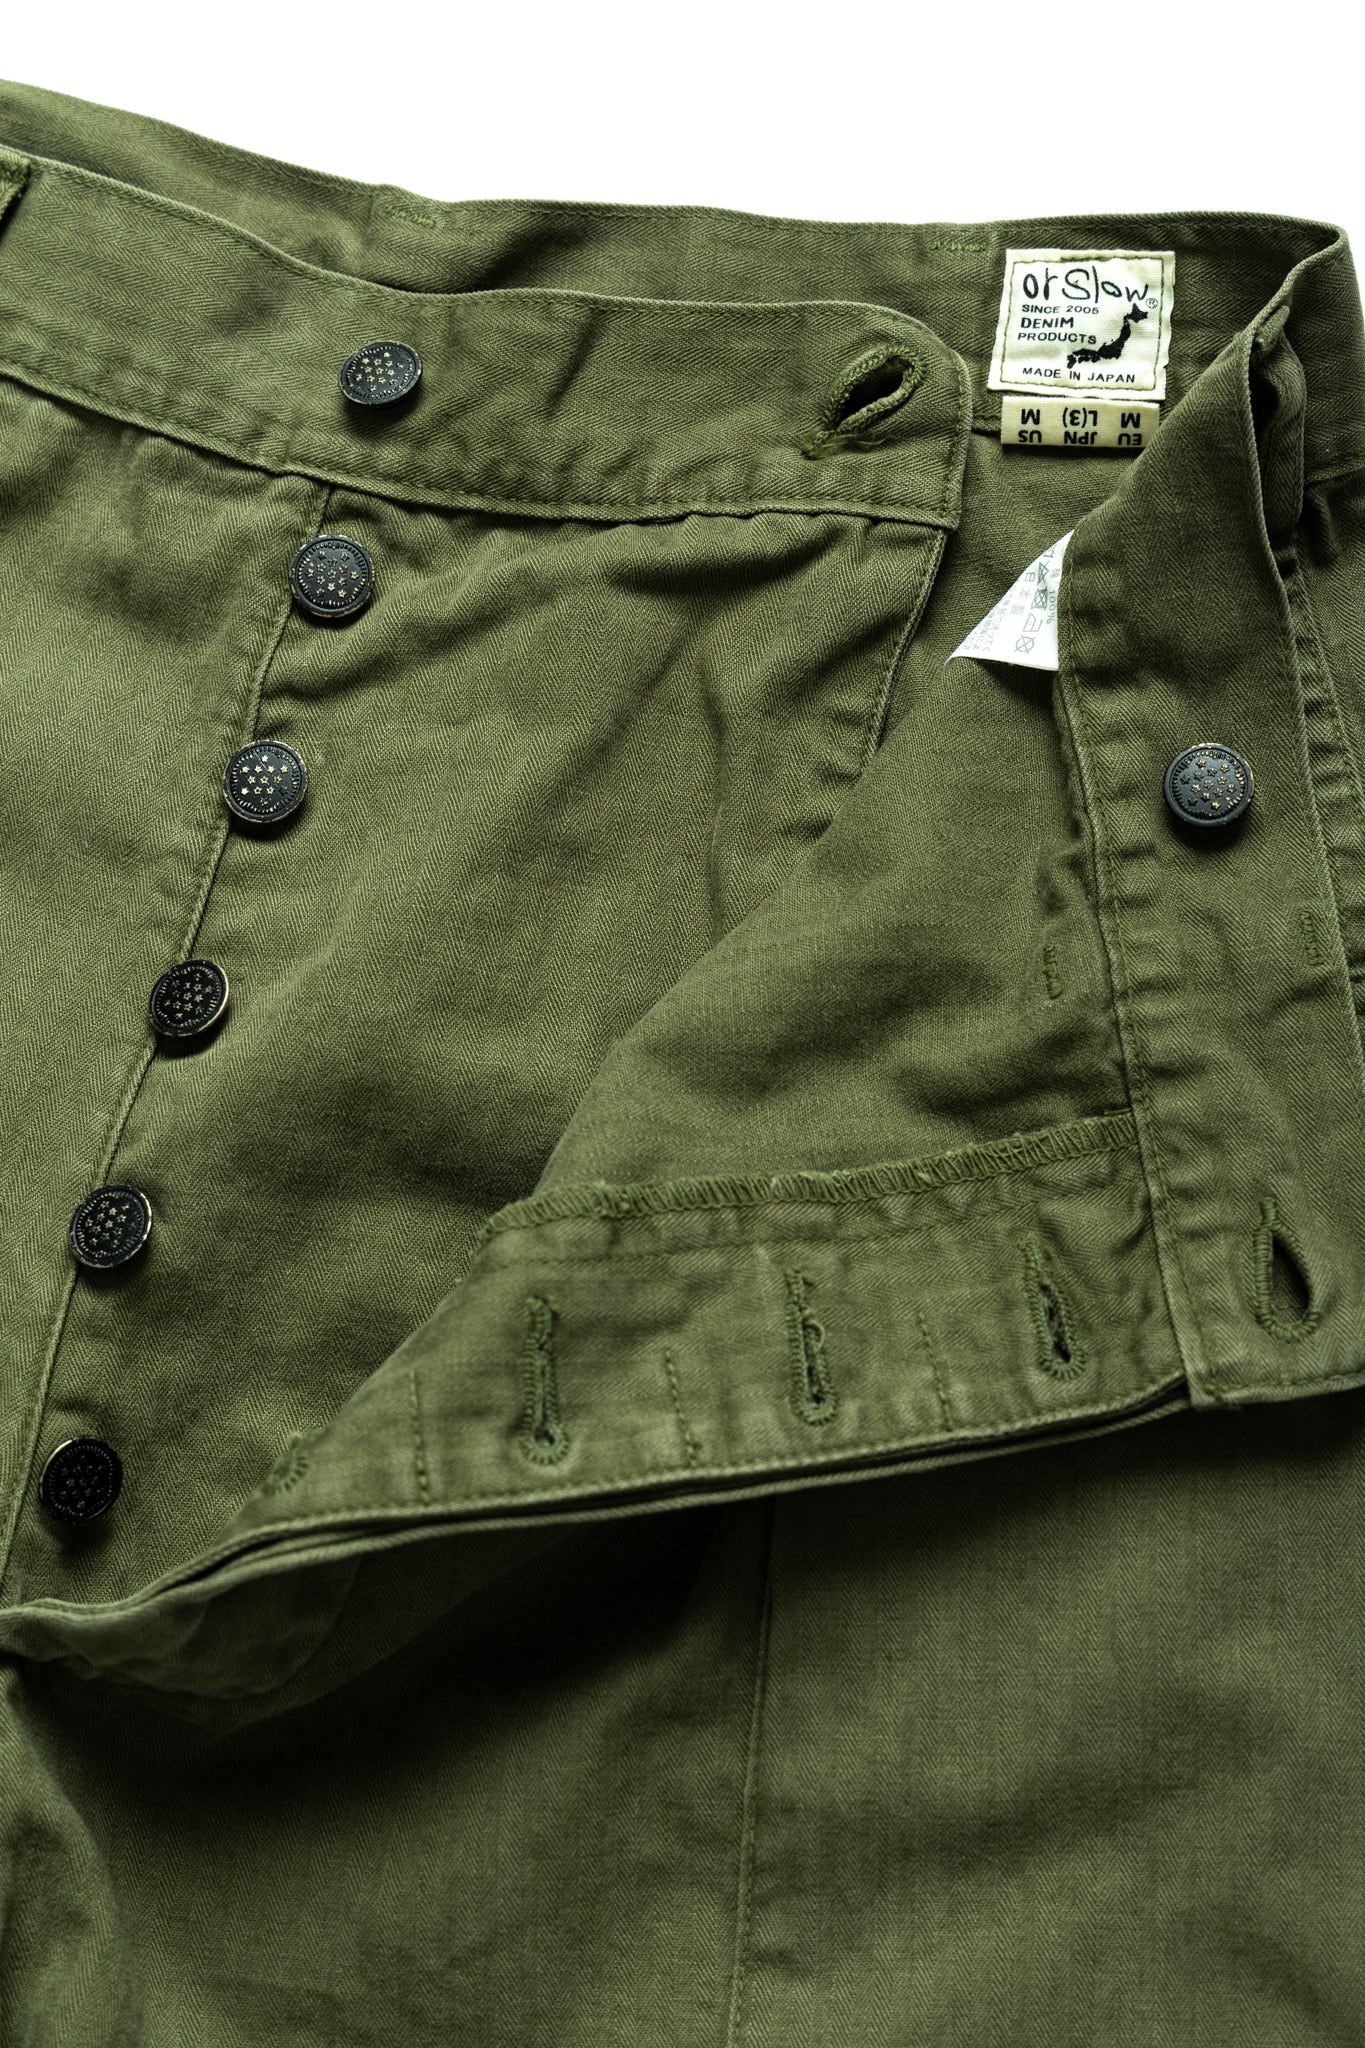 U.S. Army 2 Pocket Cargo Shorts - Army Green